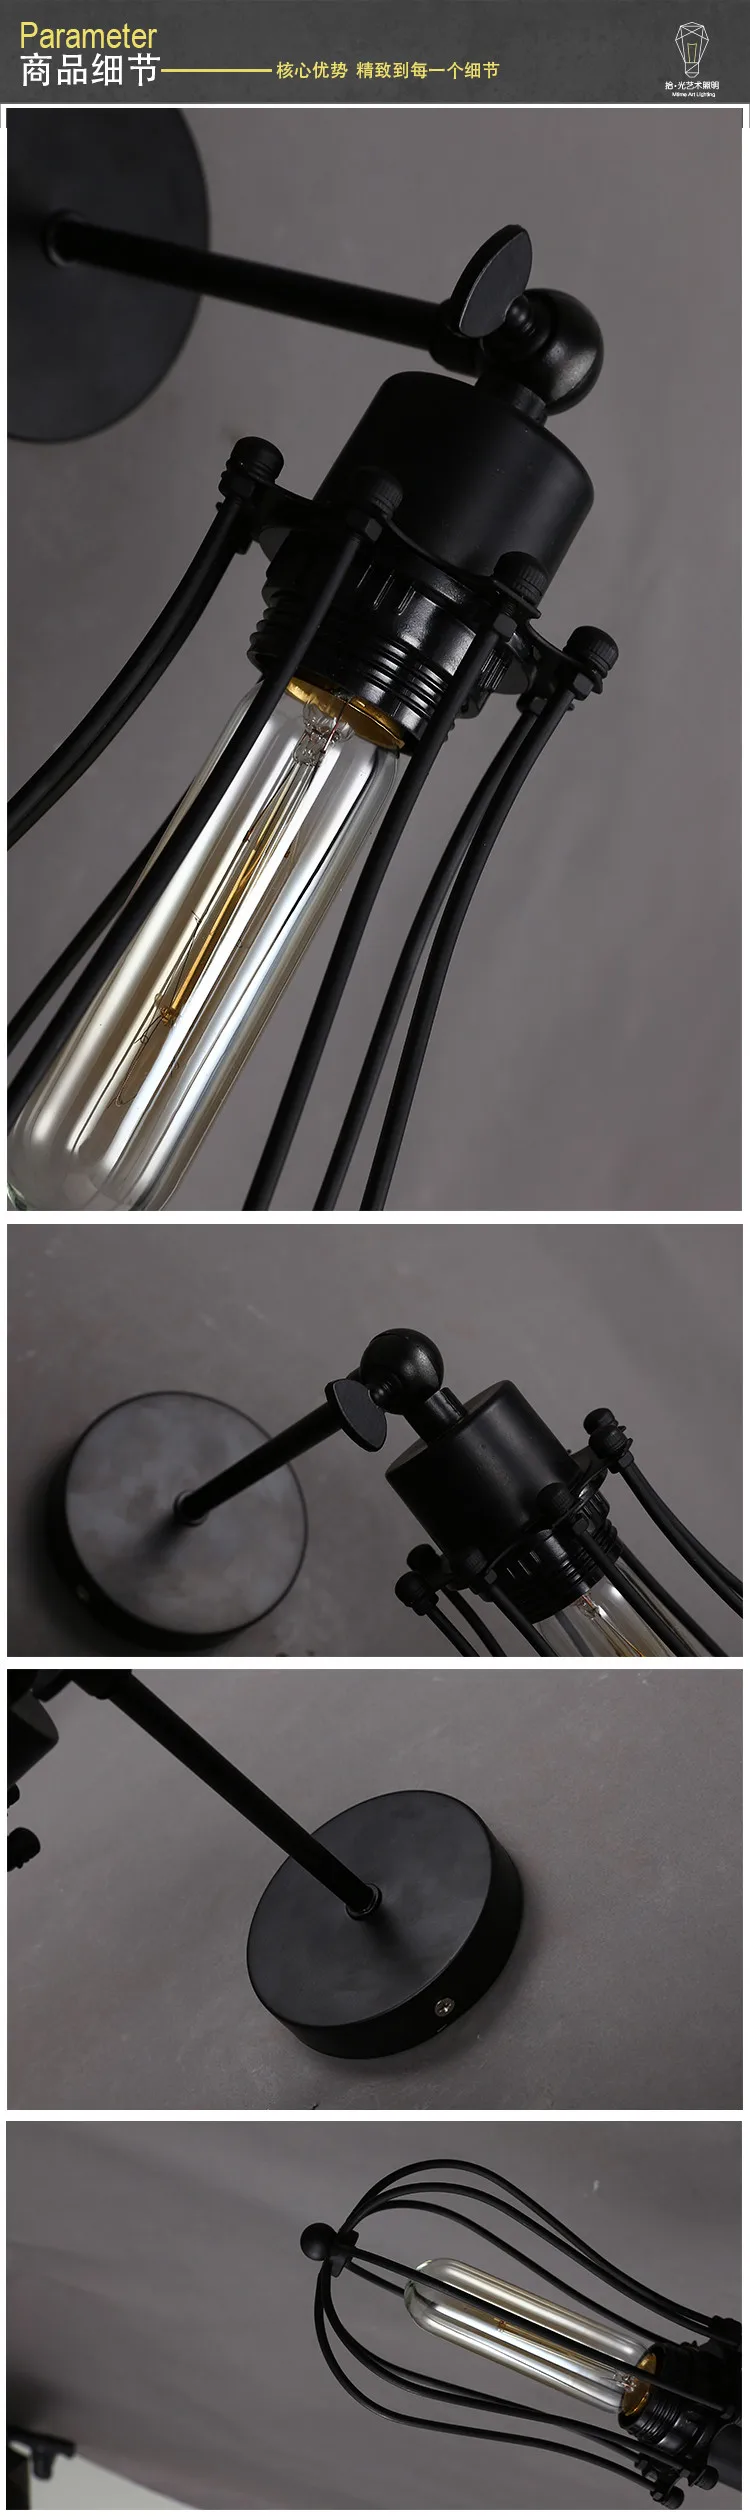 Лампа для дома Лофт ретро современный минималистичный прикроватный светильник для спальни промышленный коридор балкон открытый настенный светильник Железная лестница